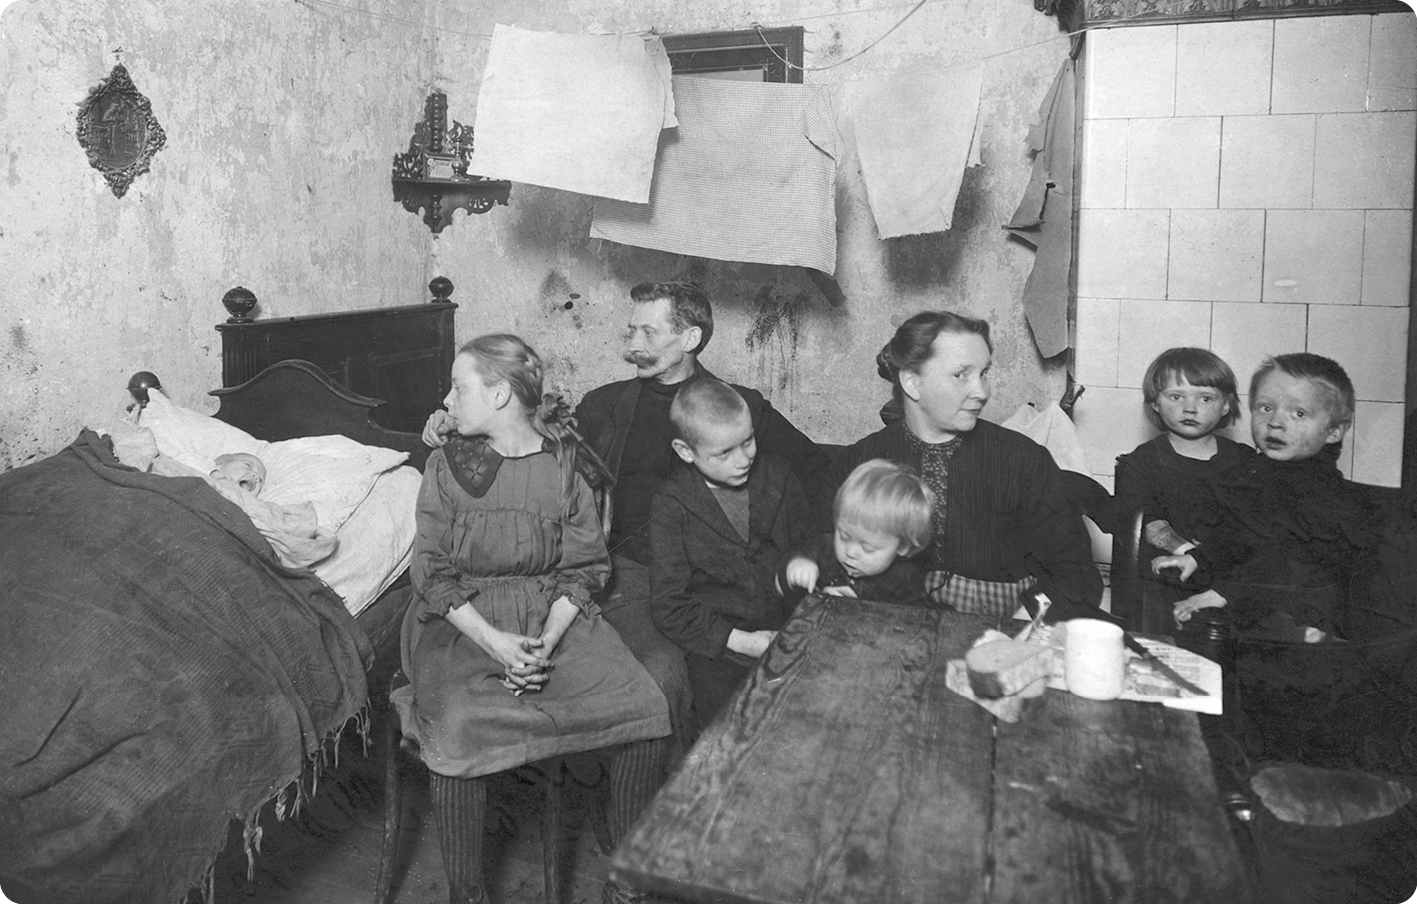 Fotografia em preto e branco. À esquerda uma cama. Sobre a cama, um bebê com a boca aberta. Ao lado, uma menina, um homem, uma mulher e quatro crianças estão sentadas ao redor de uma mesa pequena.